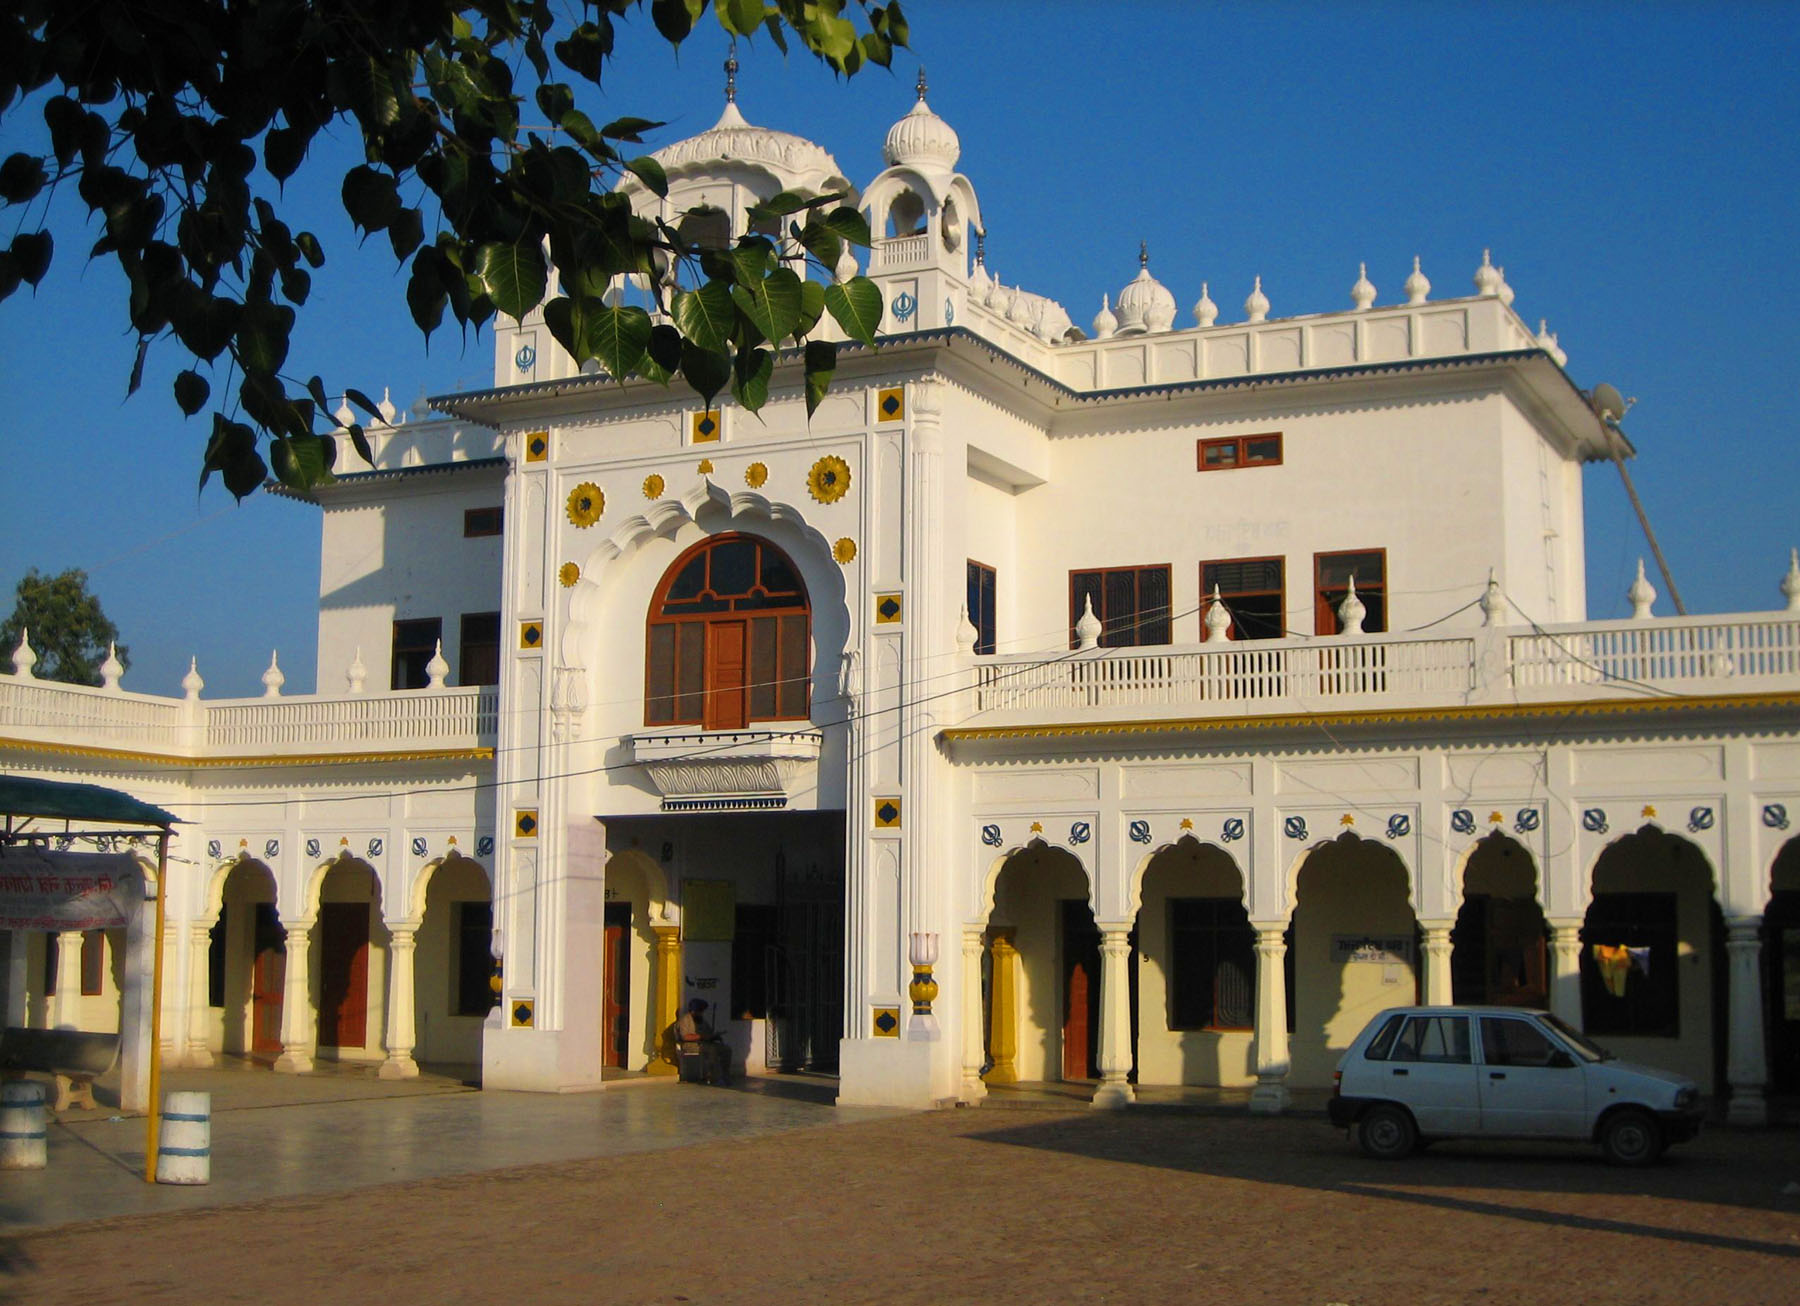 Gurudwara Sri Nabha Sahib, Zirakpur